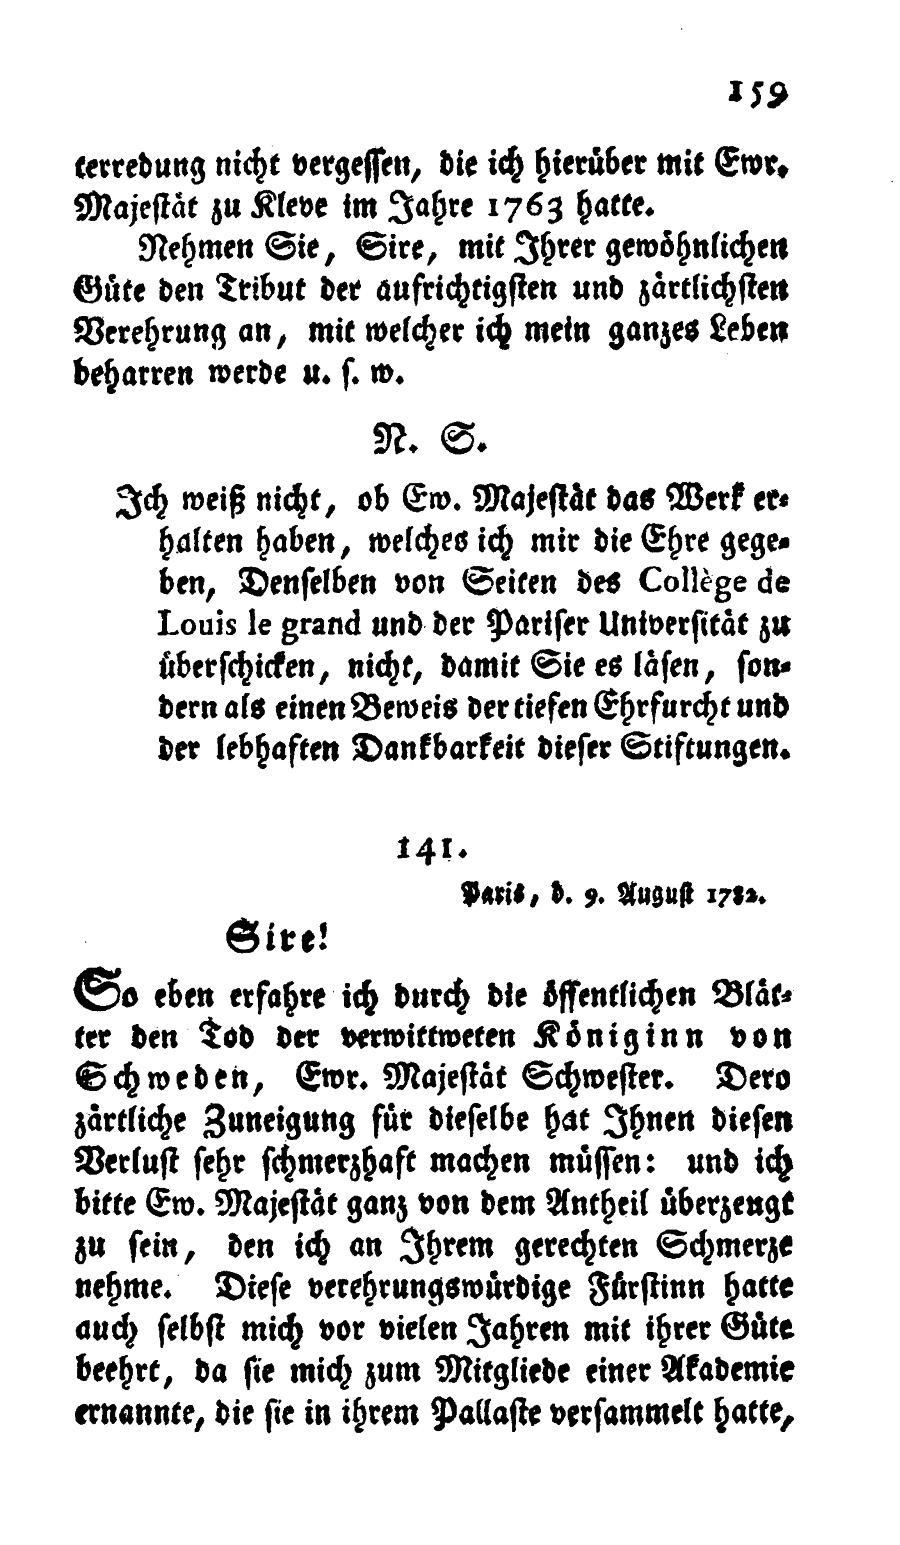 S. 159, Obj. 2